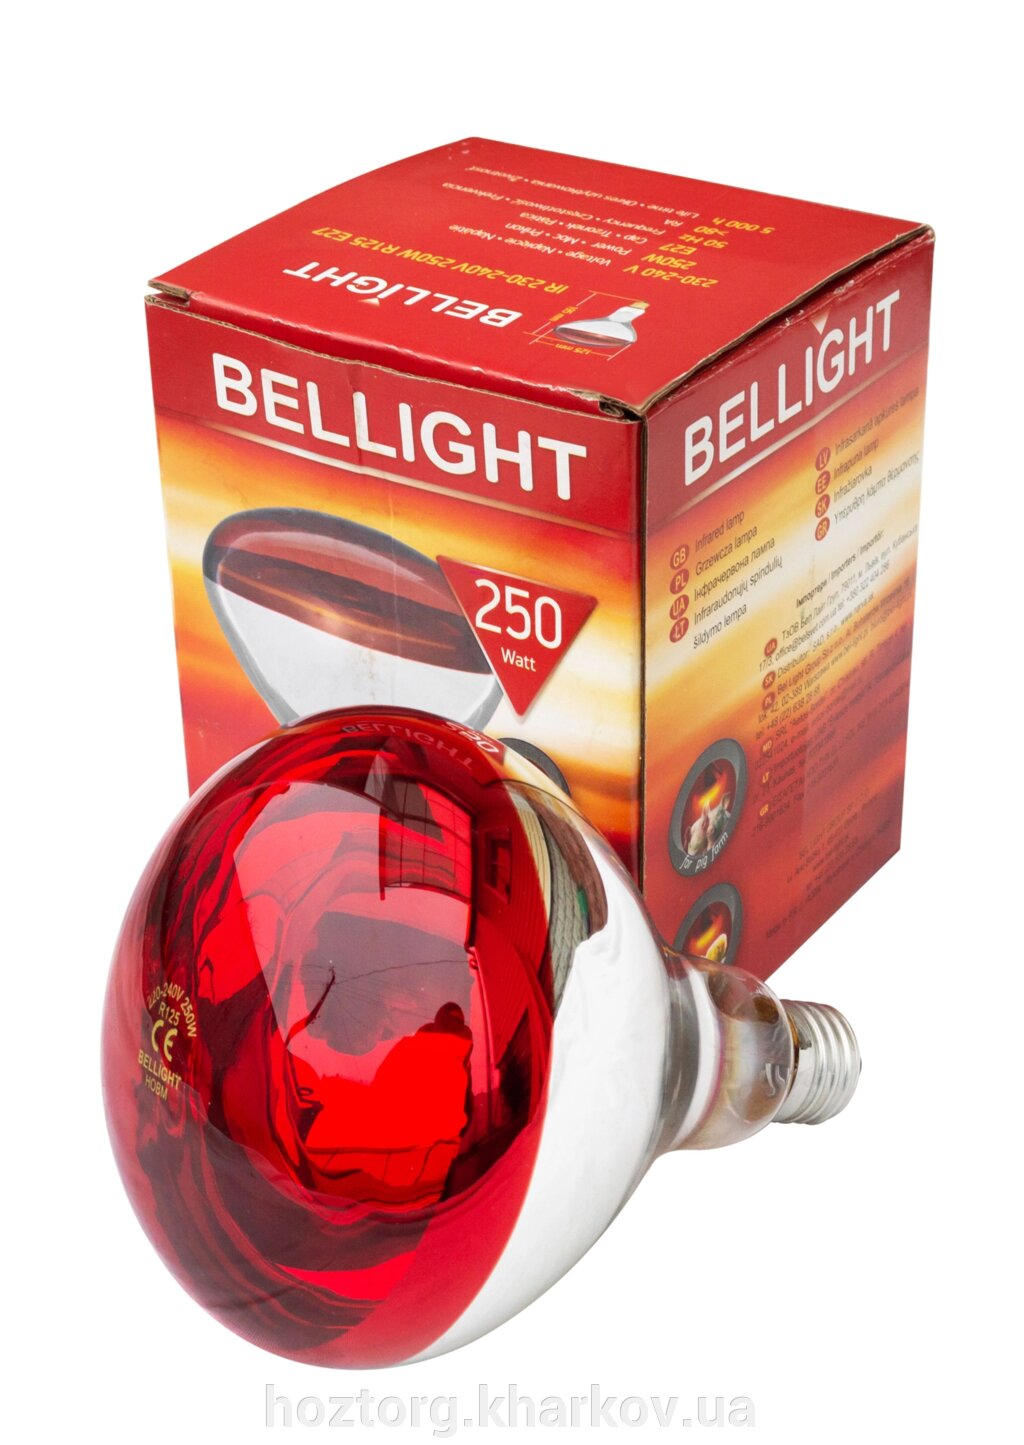 Лампа ІКЗК 250 Вт Е27 в коробочці (Bellight) від компанії Інтернет-магазин Хозторг Харків. Господарські товари оптом - фото 1